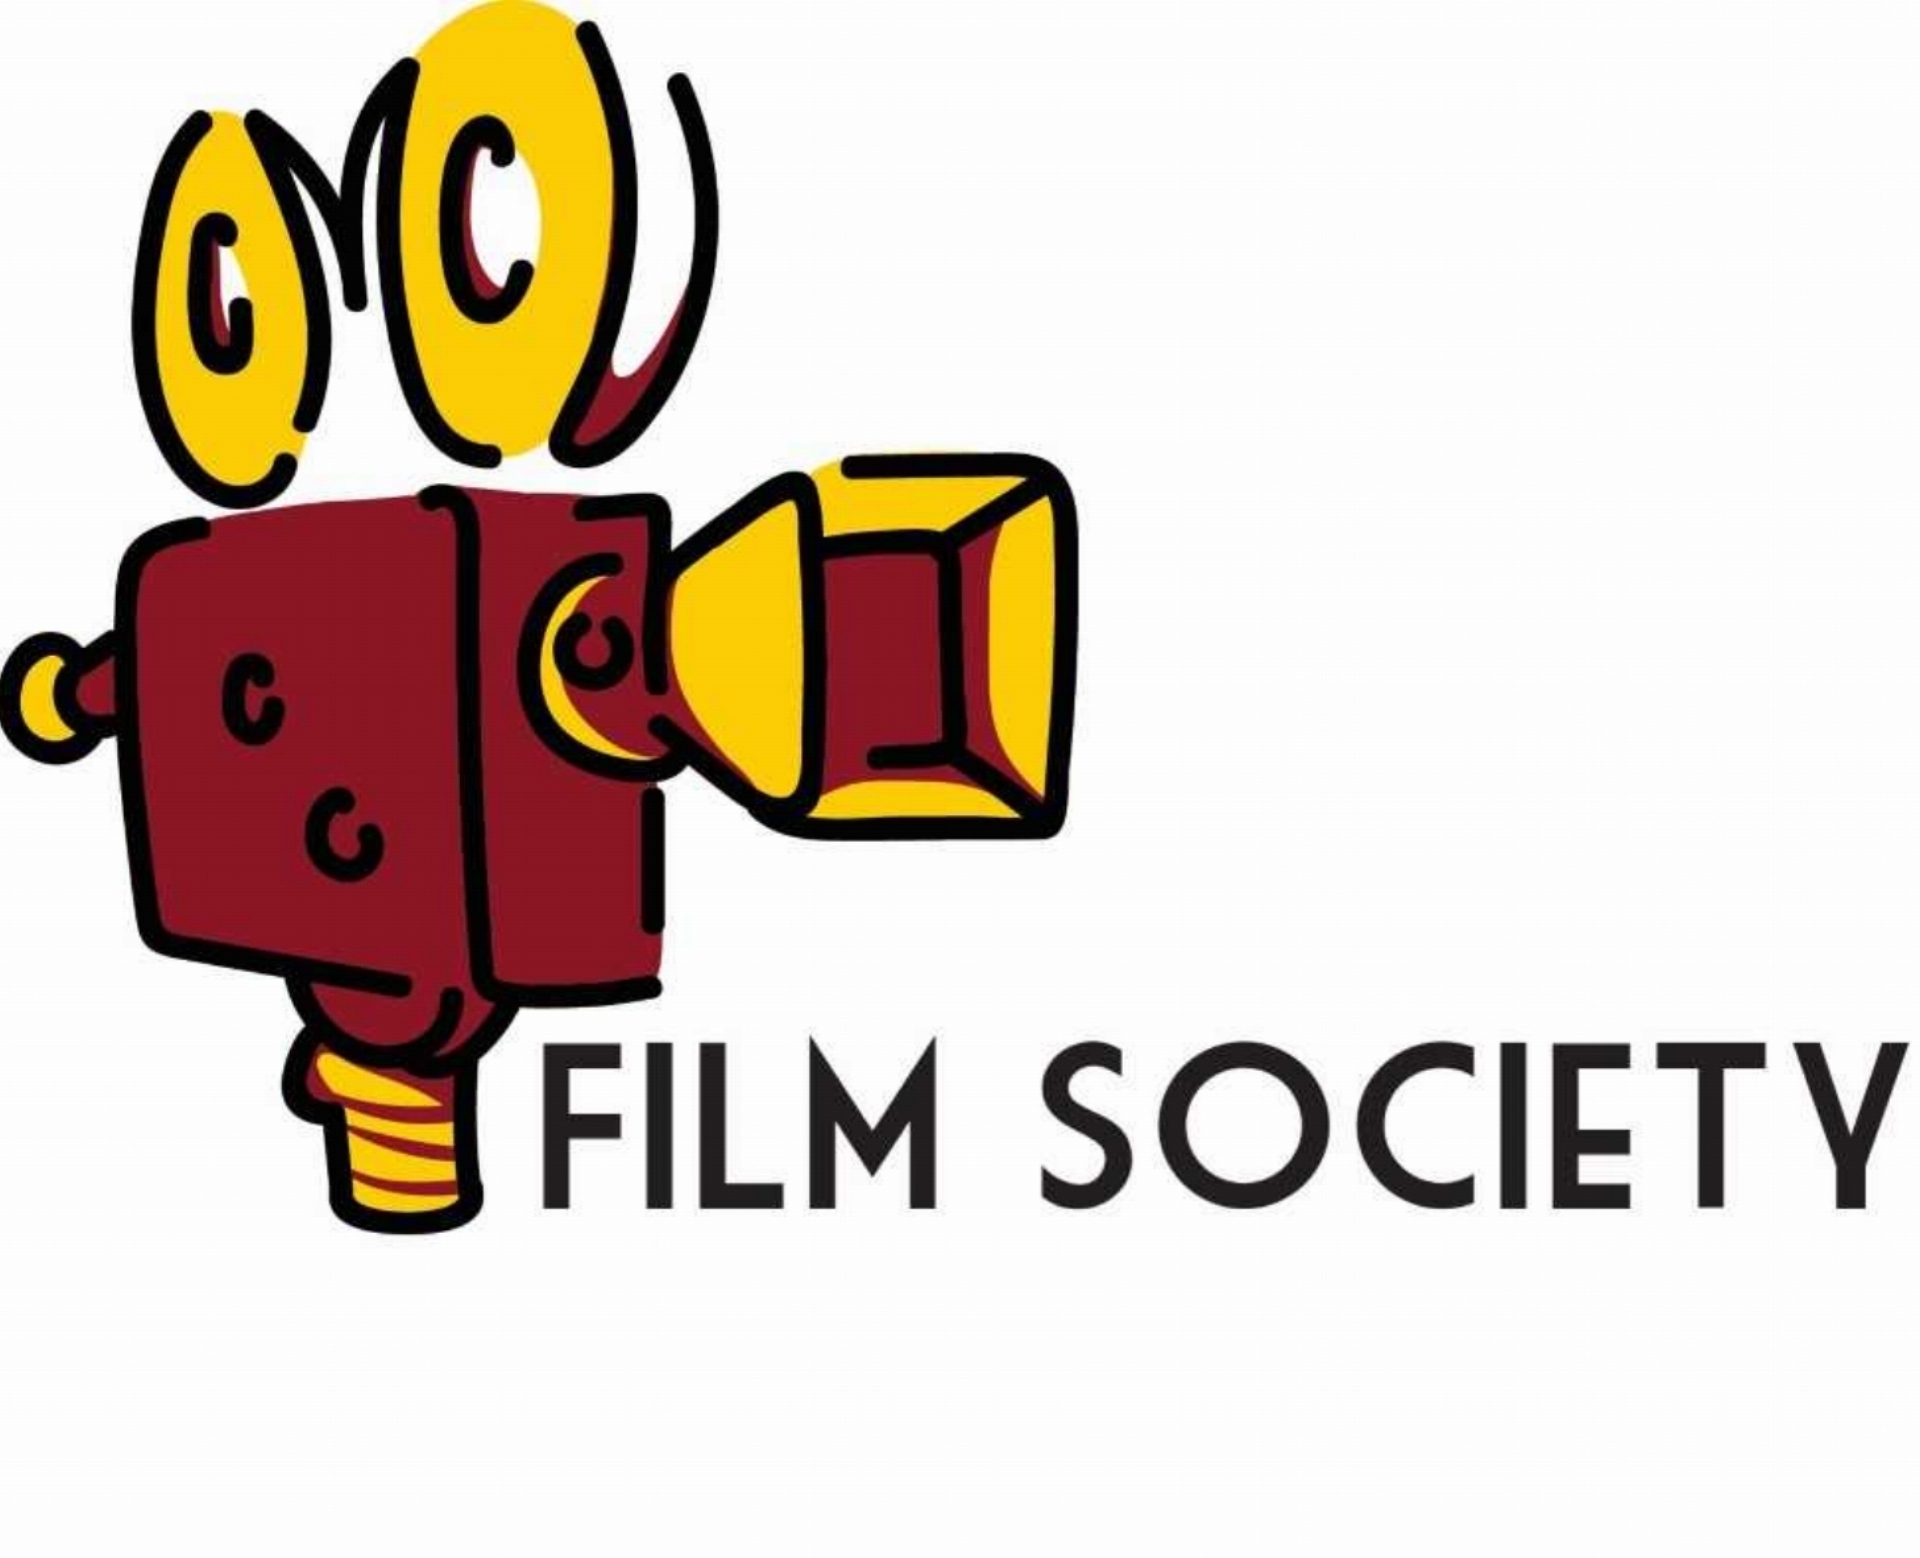 CMU Film Society